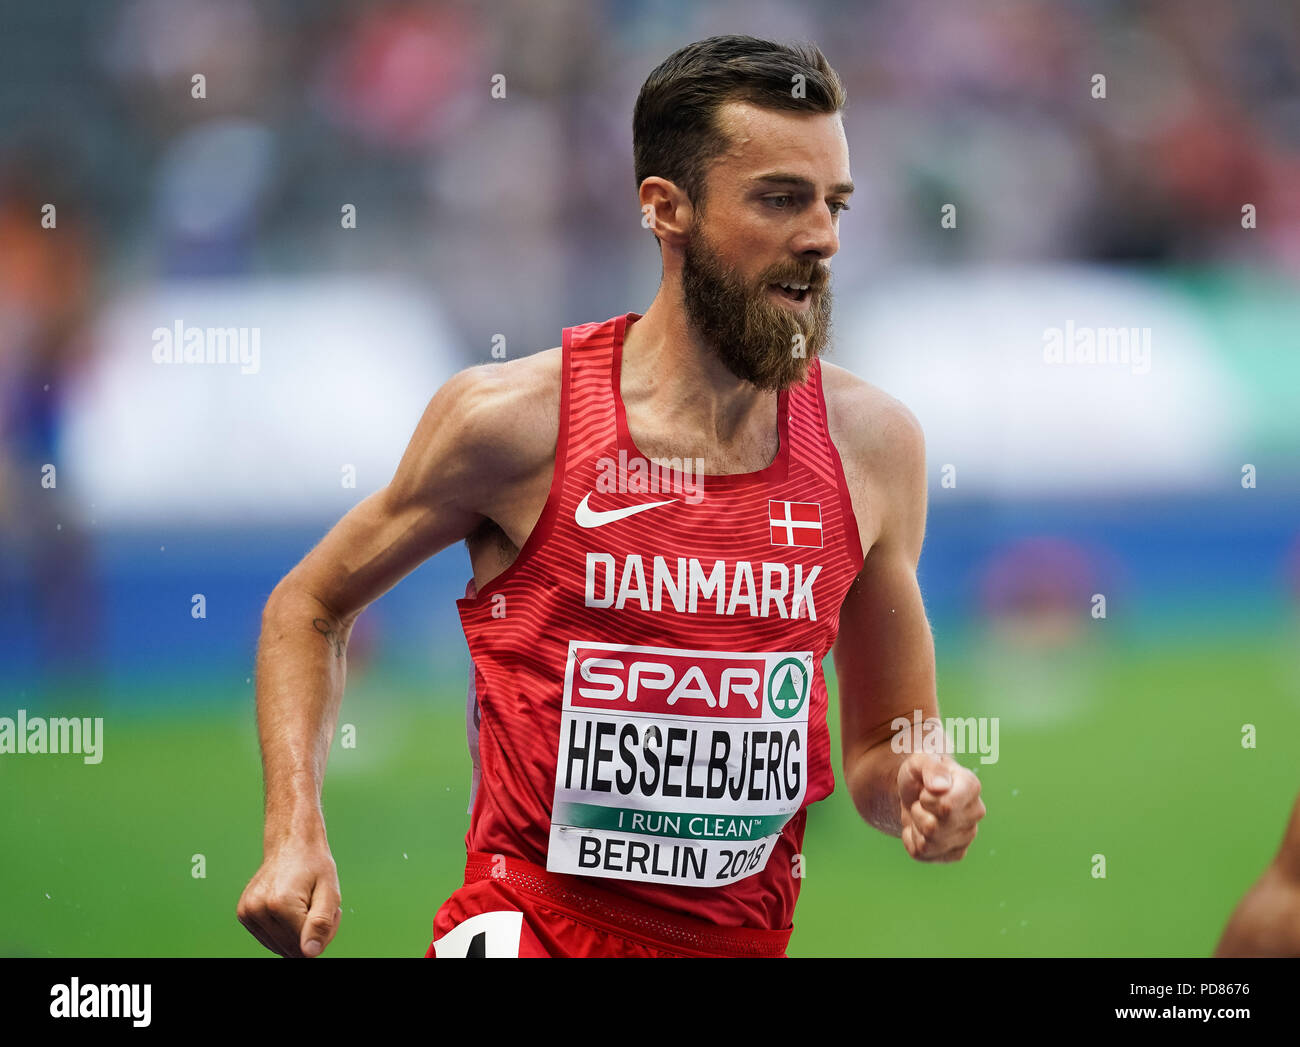 7 août 2018 : Hesslbjerg pendant 3000m Steeple Chase pour les hommes au Stade Olympique, à Berlin, à l'European Athletics Championship. Ulrik Pedersen/CSM Banque D'Images